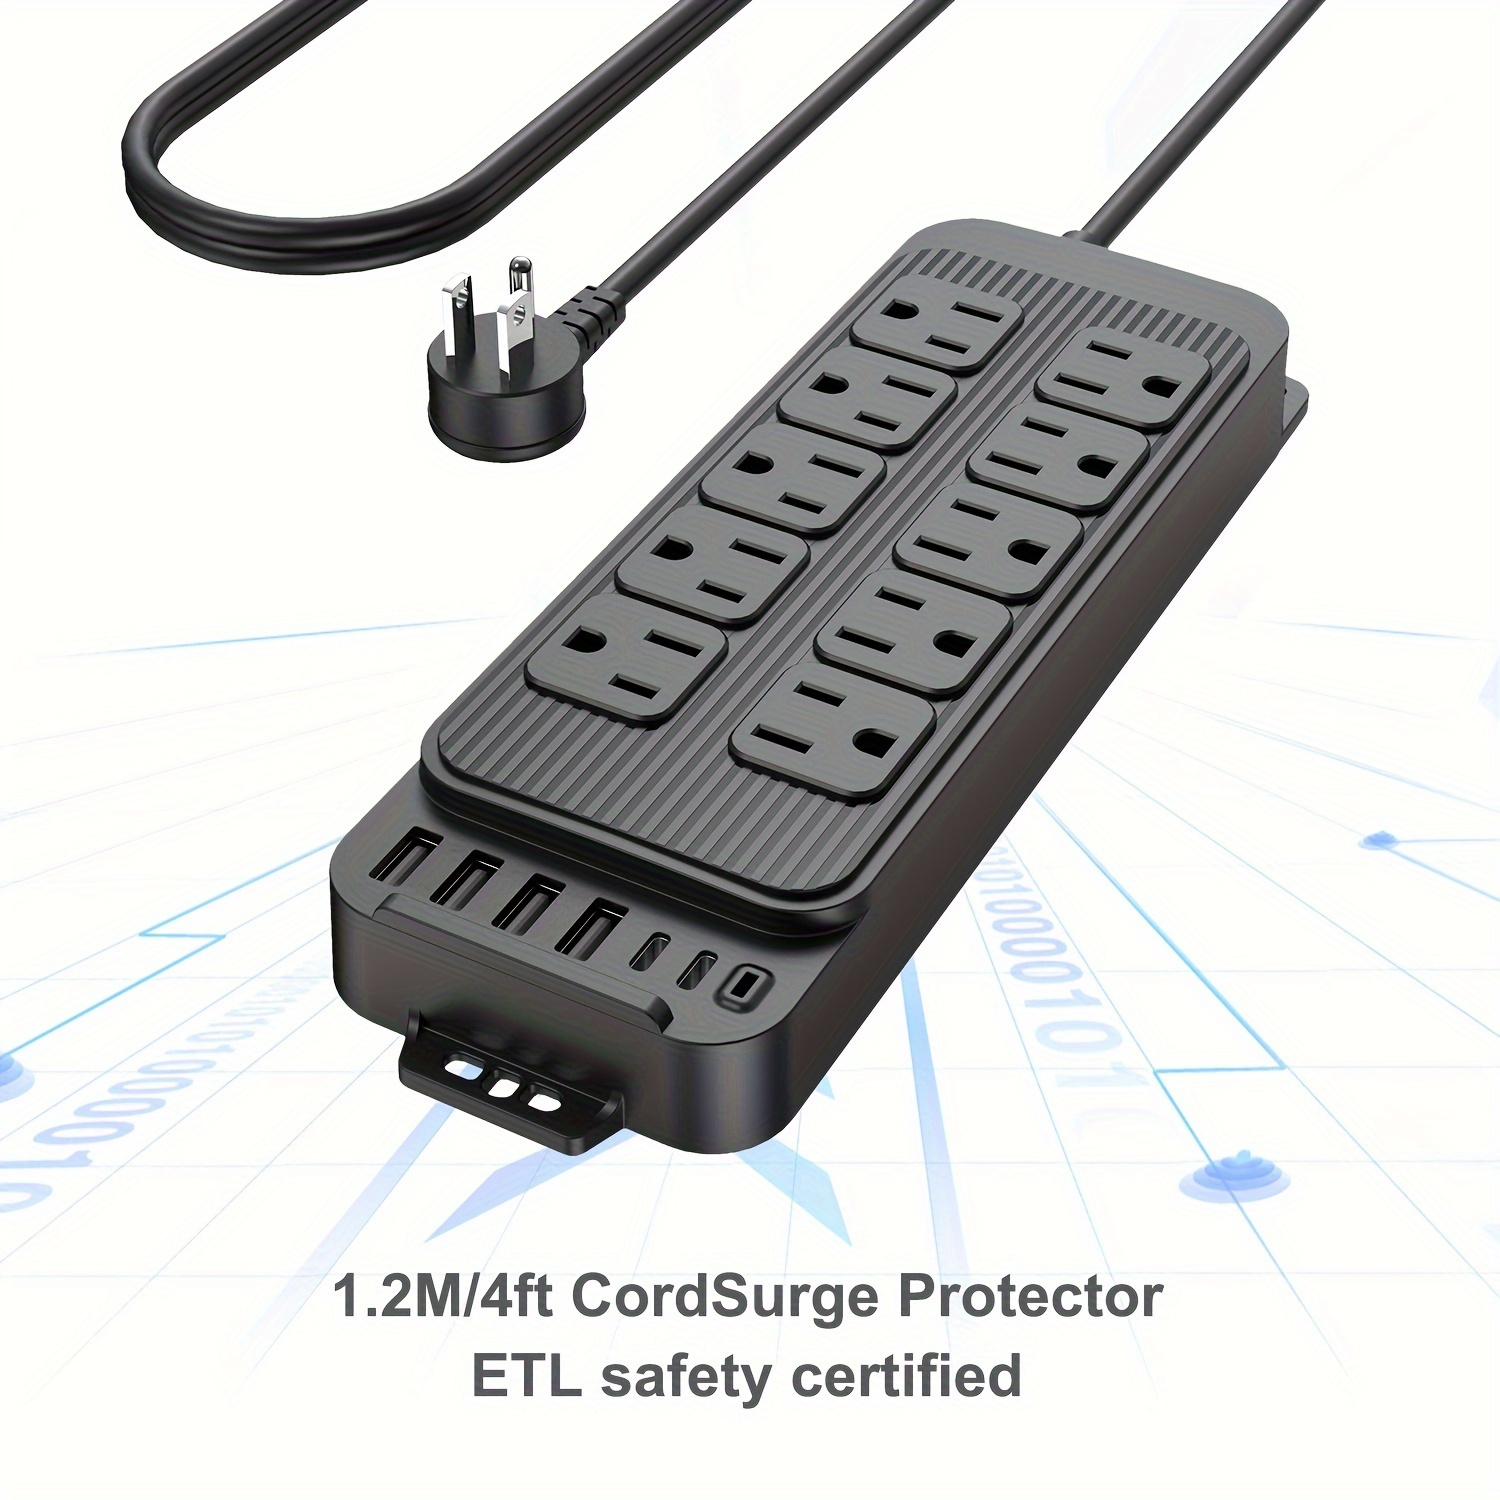 Regleta protectora contra sobretensiones con 8 salidas y 4 puertos USB  (total 3.4 A) y 1 puerto tipo C, cable de extensión de 6 pies (1875 W/15  A)